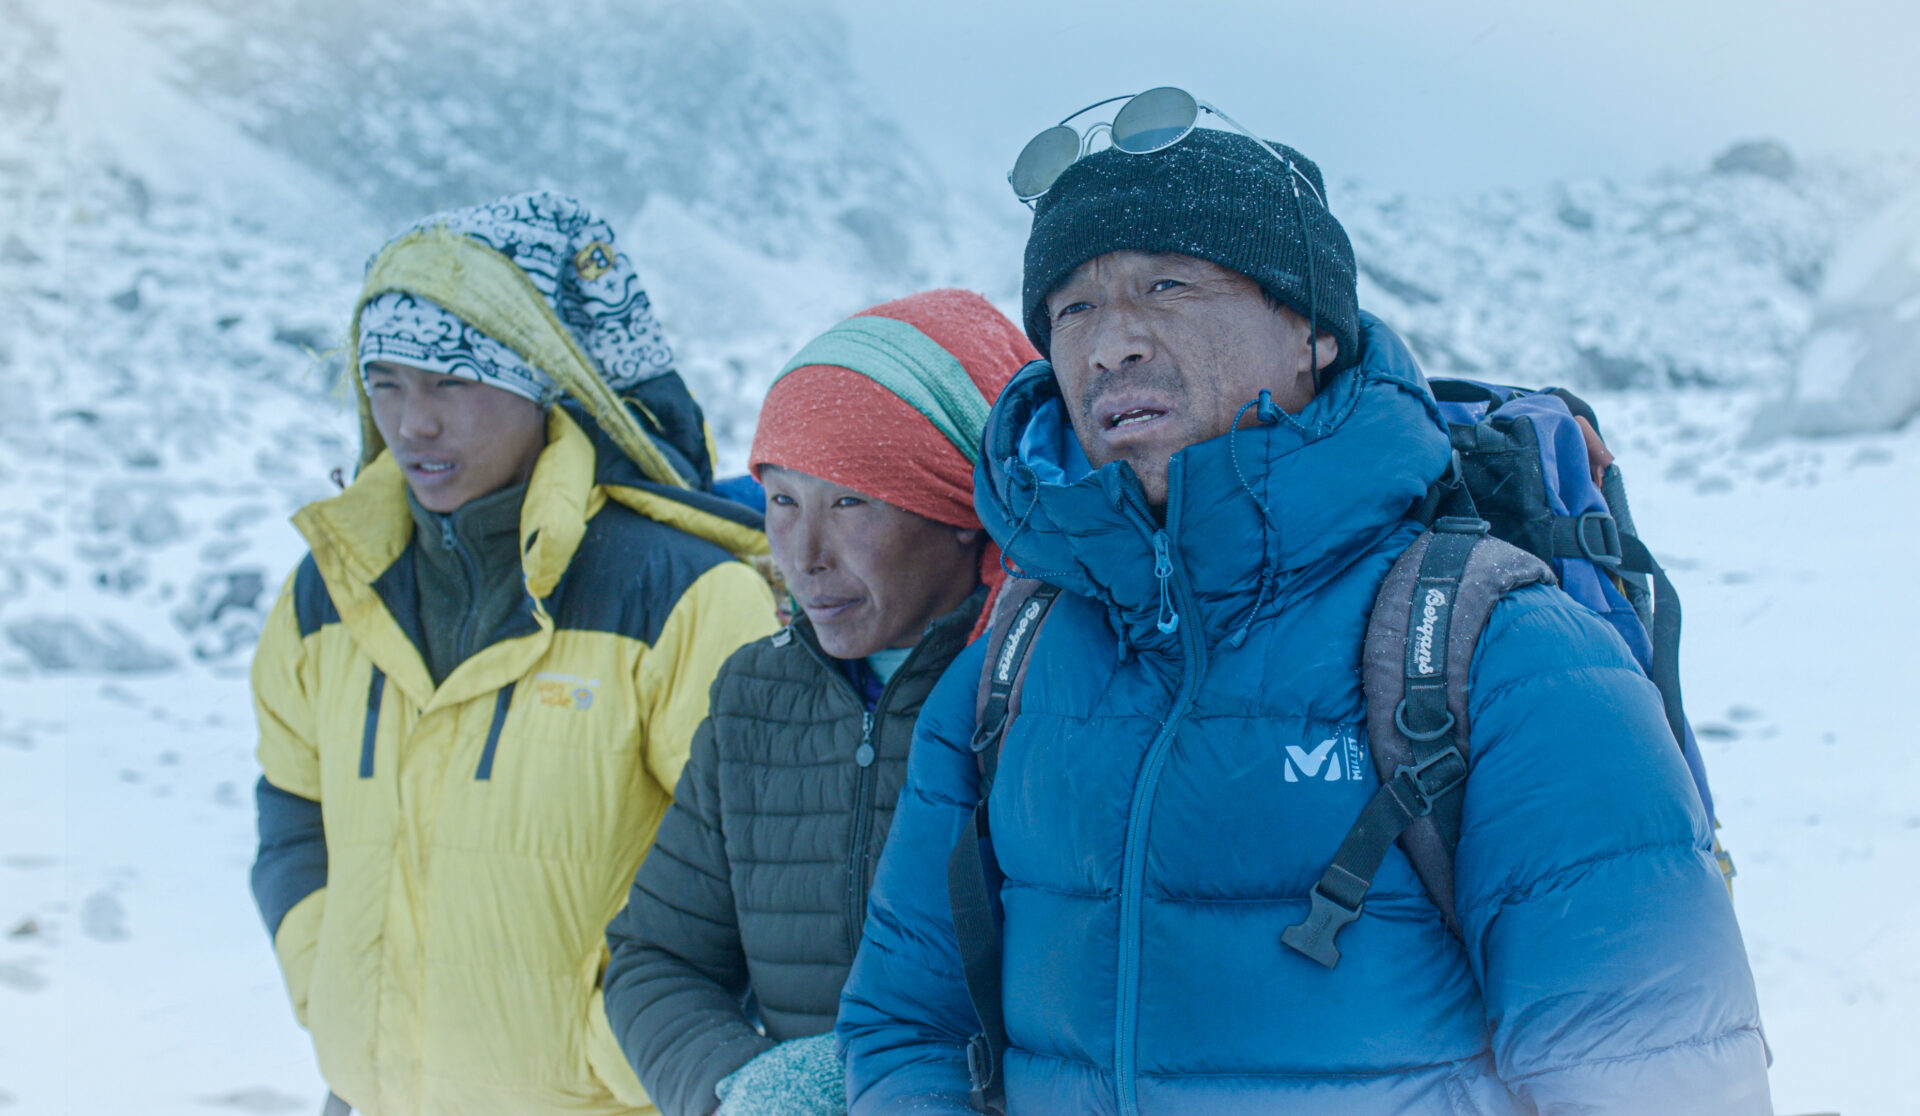 Die Sherpa-Familie am Fusse des Kumbhakarna: Sollen sie wirklich auf den heiligen Berg und somit einen Gott besteigen?